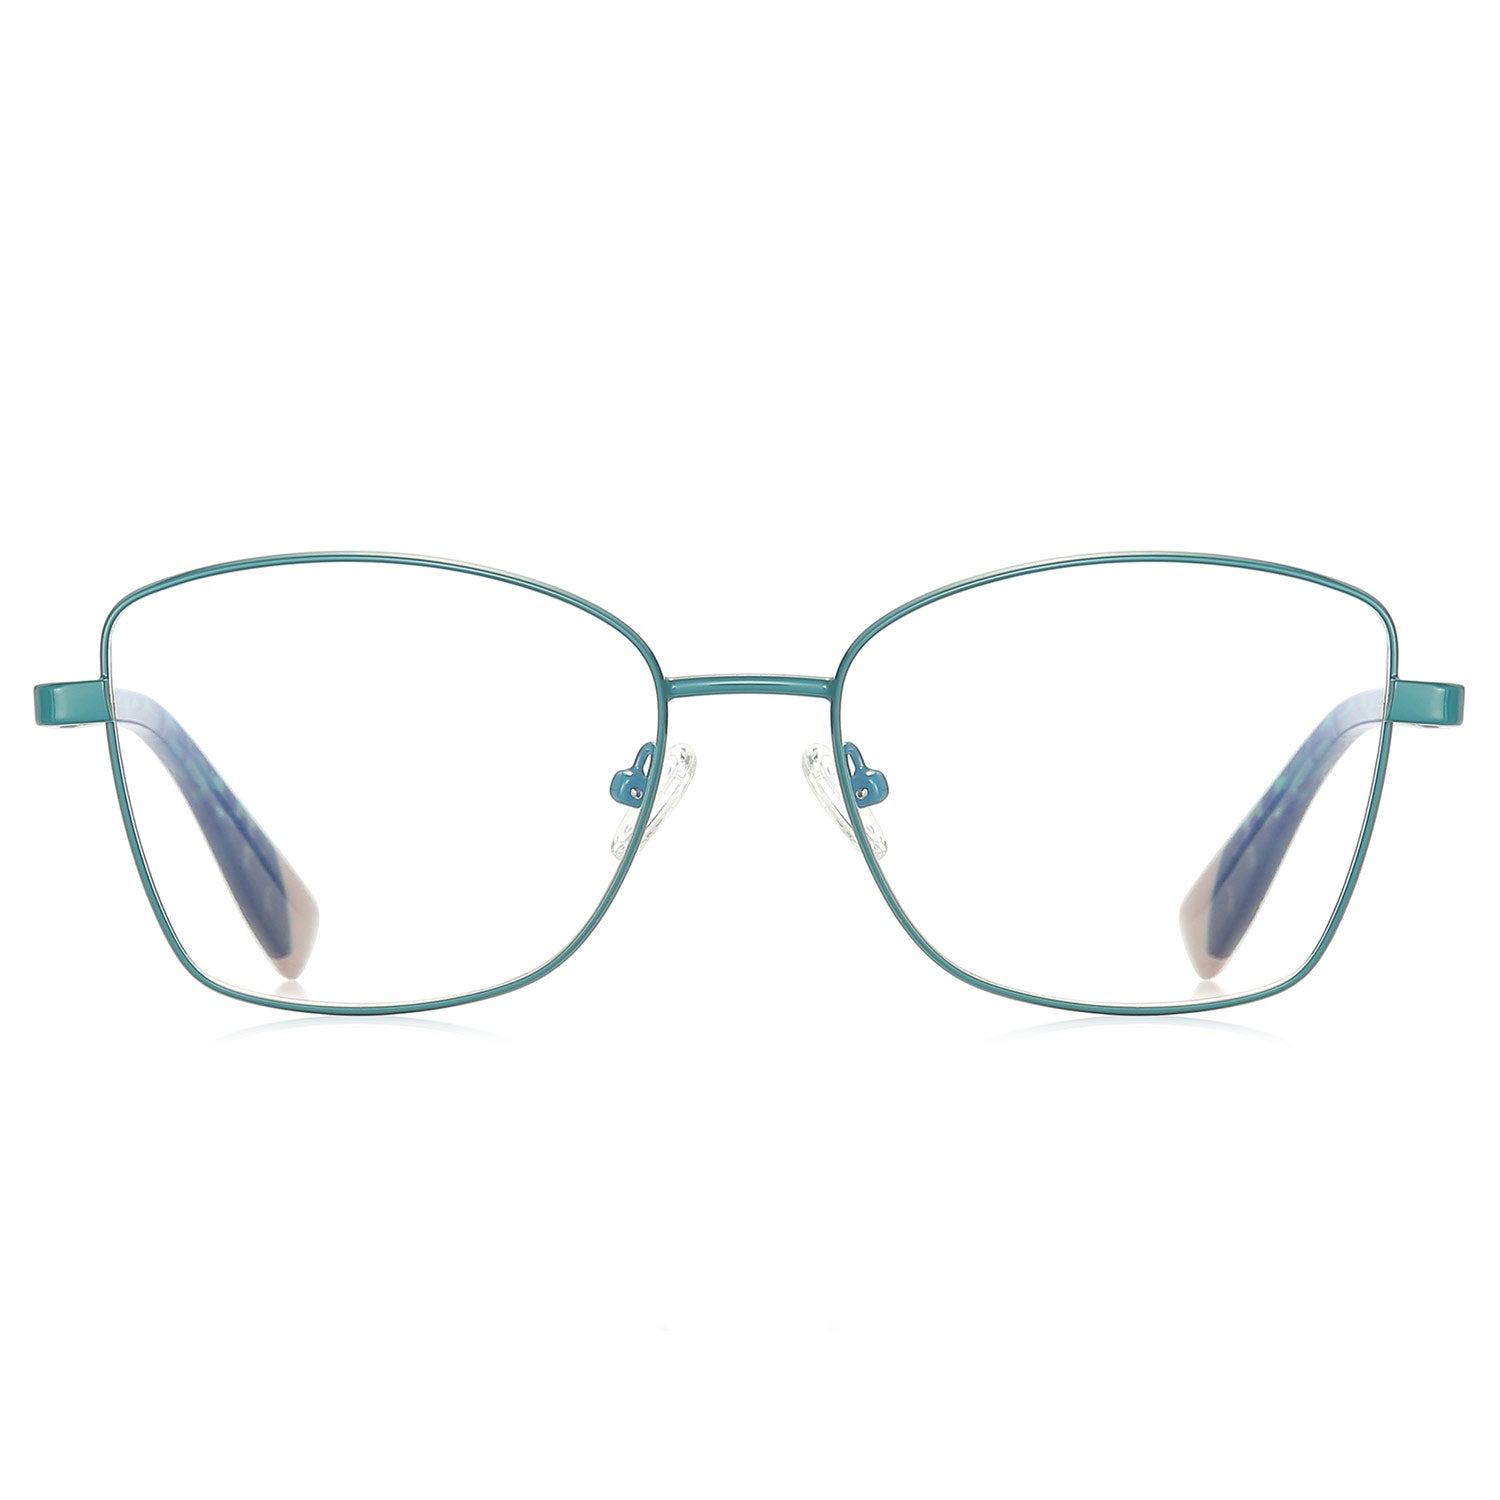 Bade | Rectangle/Green/Metal - Eyeglasses | ELKLOOK